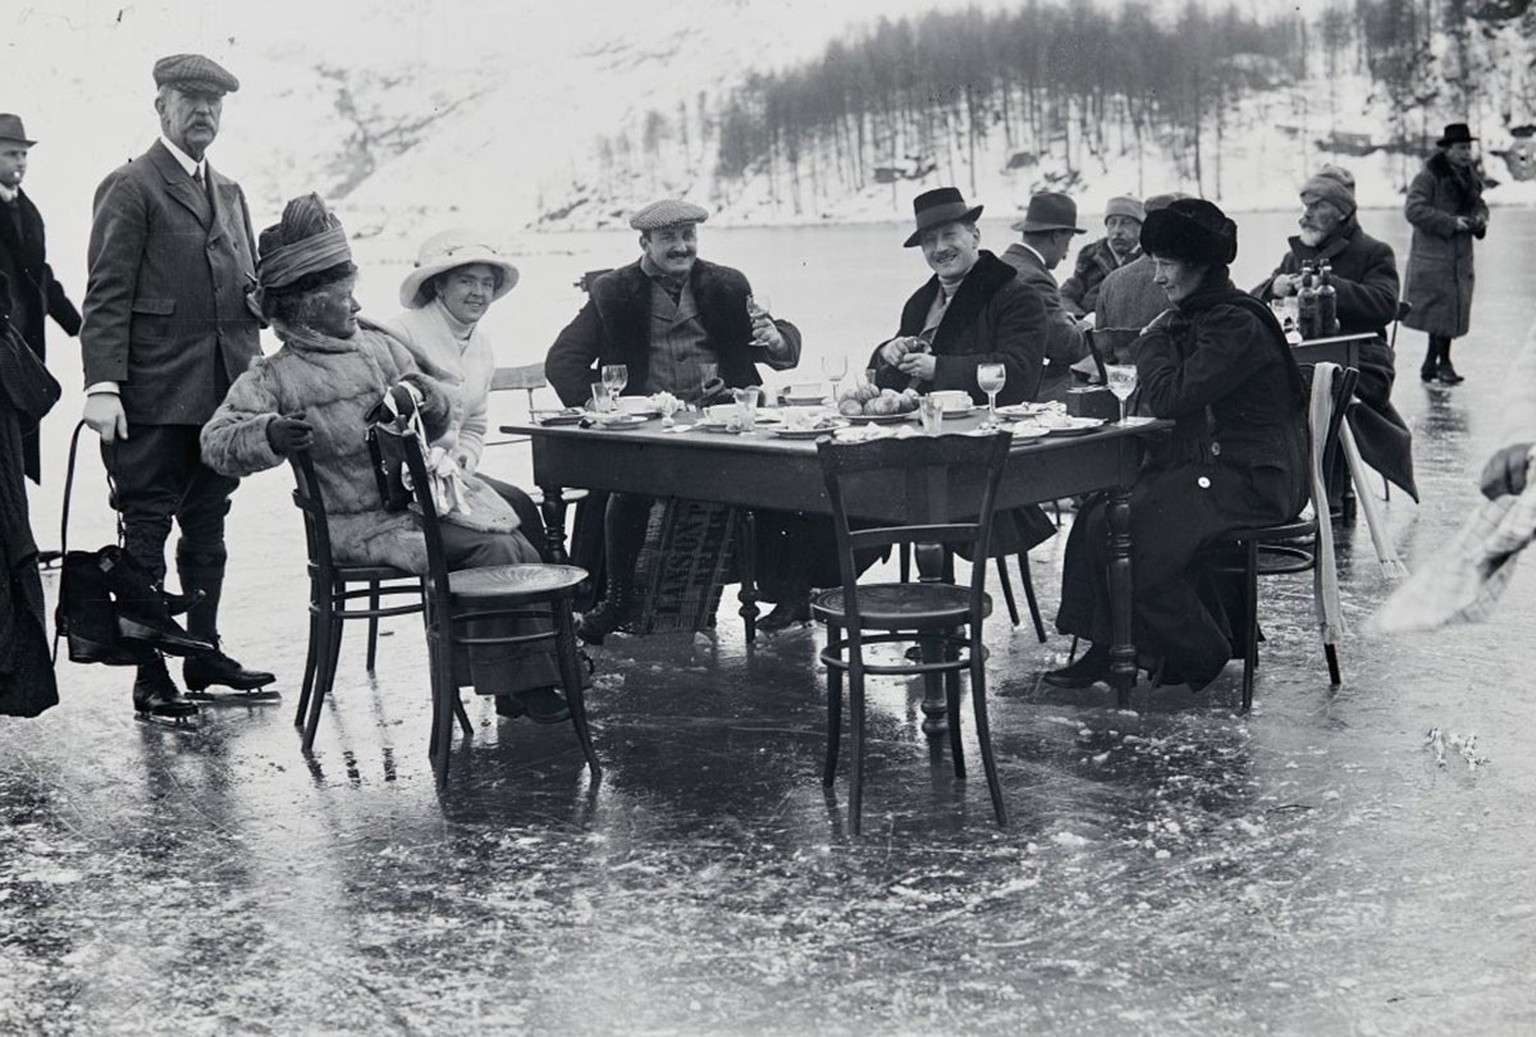 Pique-nique mondain sur la glace à Saint-Moritz, vers 1900.
https://sammlung.nationalmuseum.ch/de/list?detailID=100391320